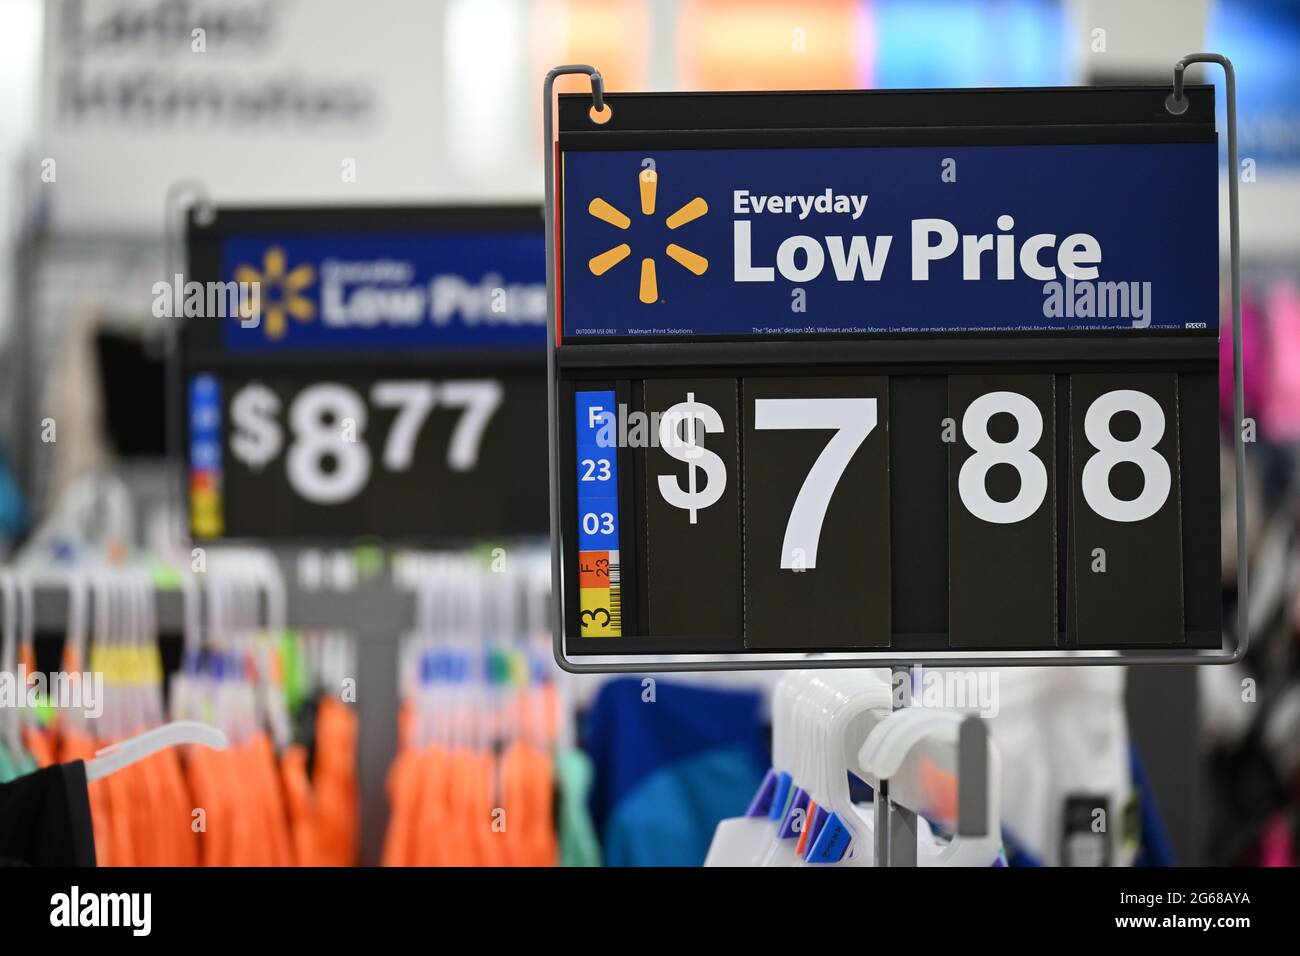 Affiche de bas prix quotidien Walmart sur le porte-vêtements, prix de  '$7.88' (premier plan) et '$8.77' (arrière-plan), côté droit, cintres  visibles Photo Stock - Alamy